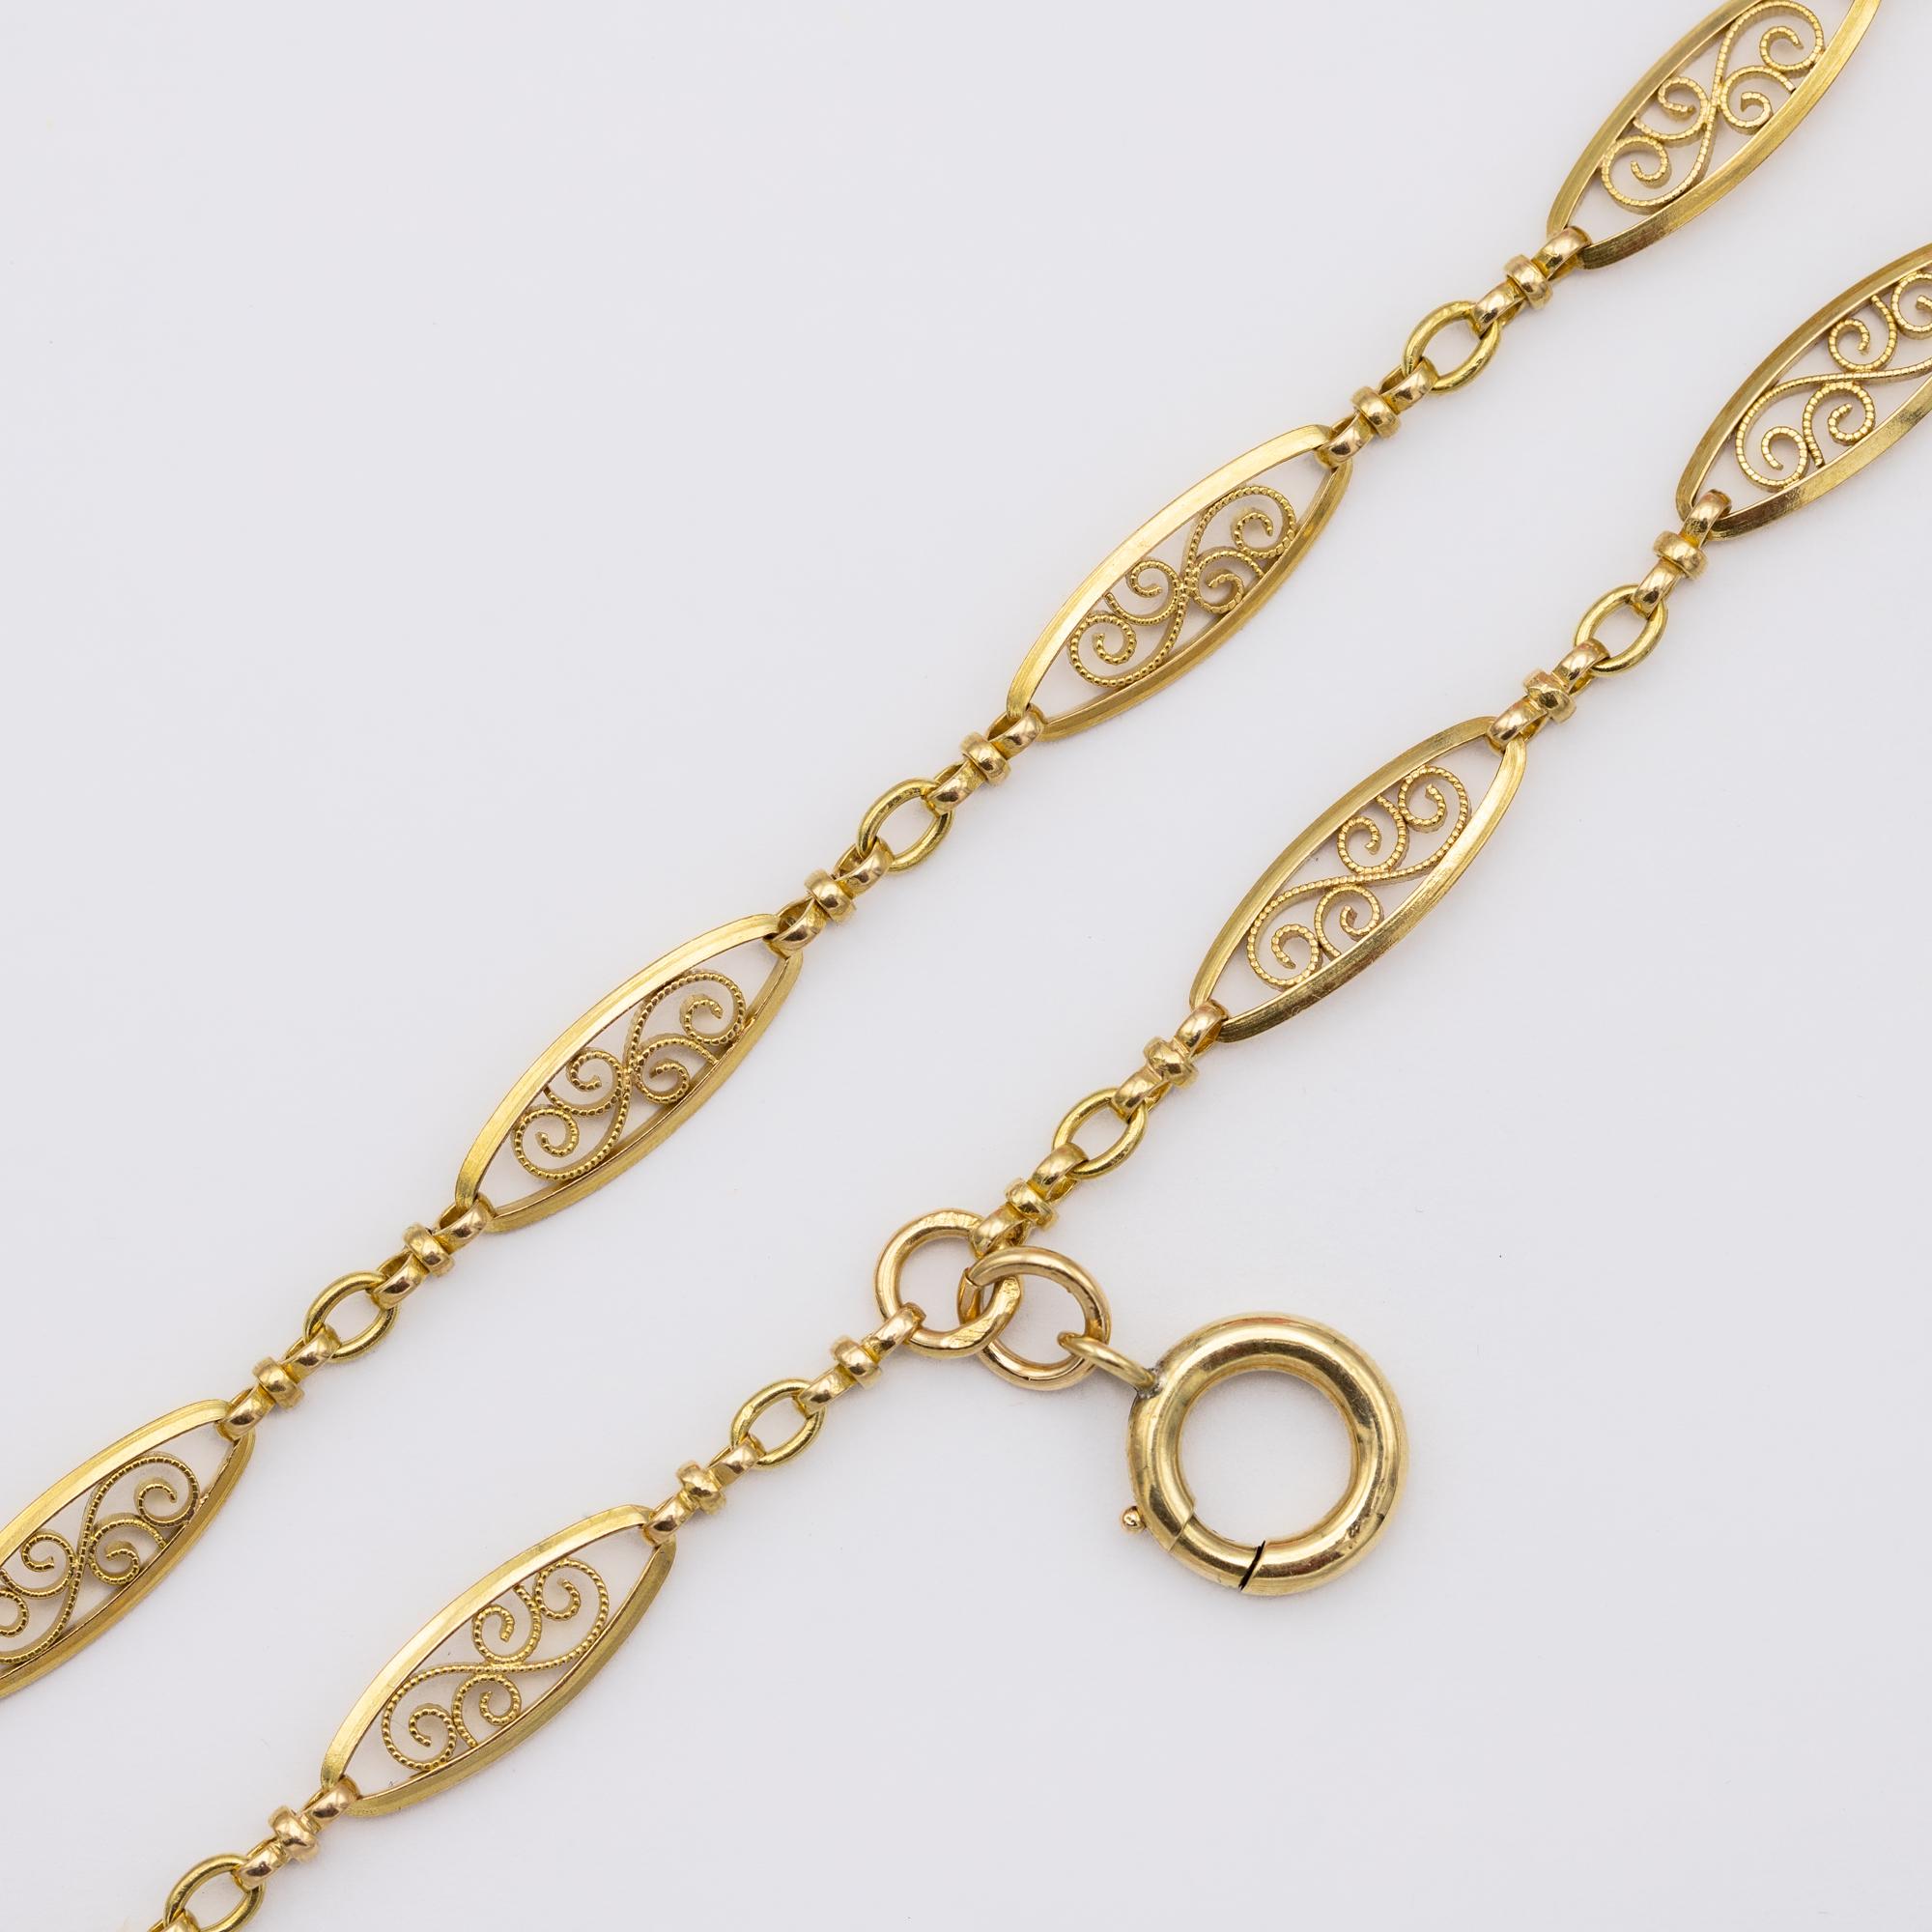 Antique 18k gold Sautoir necklace, 155cm long guard, Victorian double rope chain 2